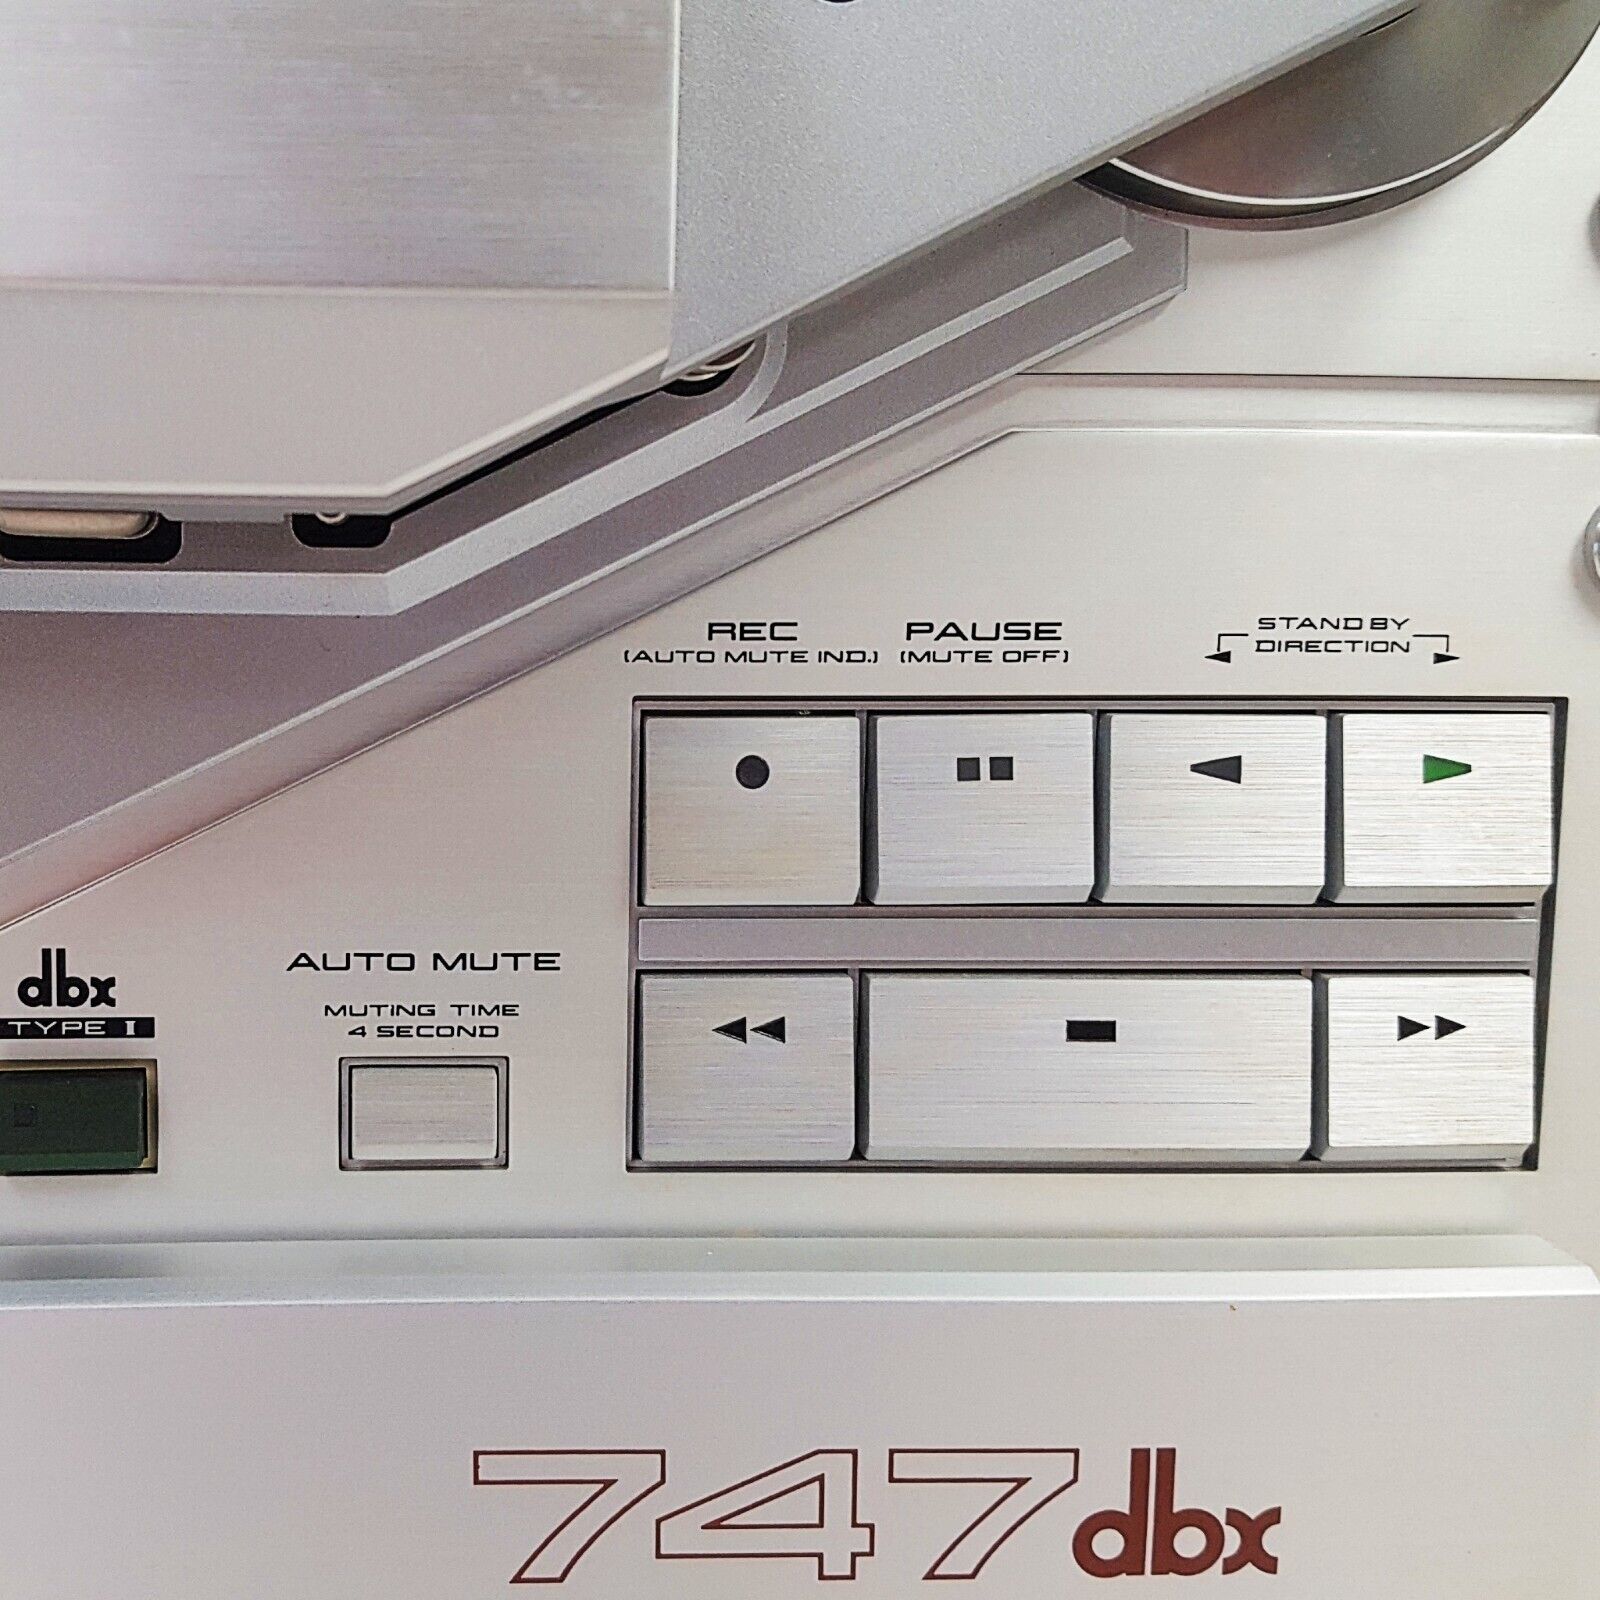 Akai GX-747 DBX -4-Track Stereo Tape Deck